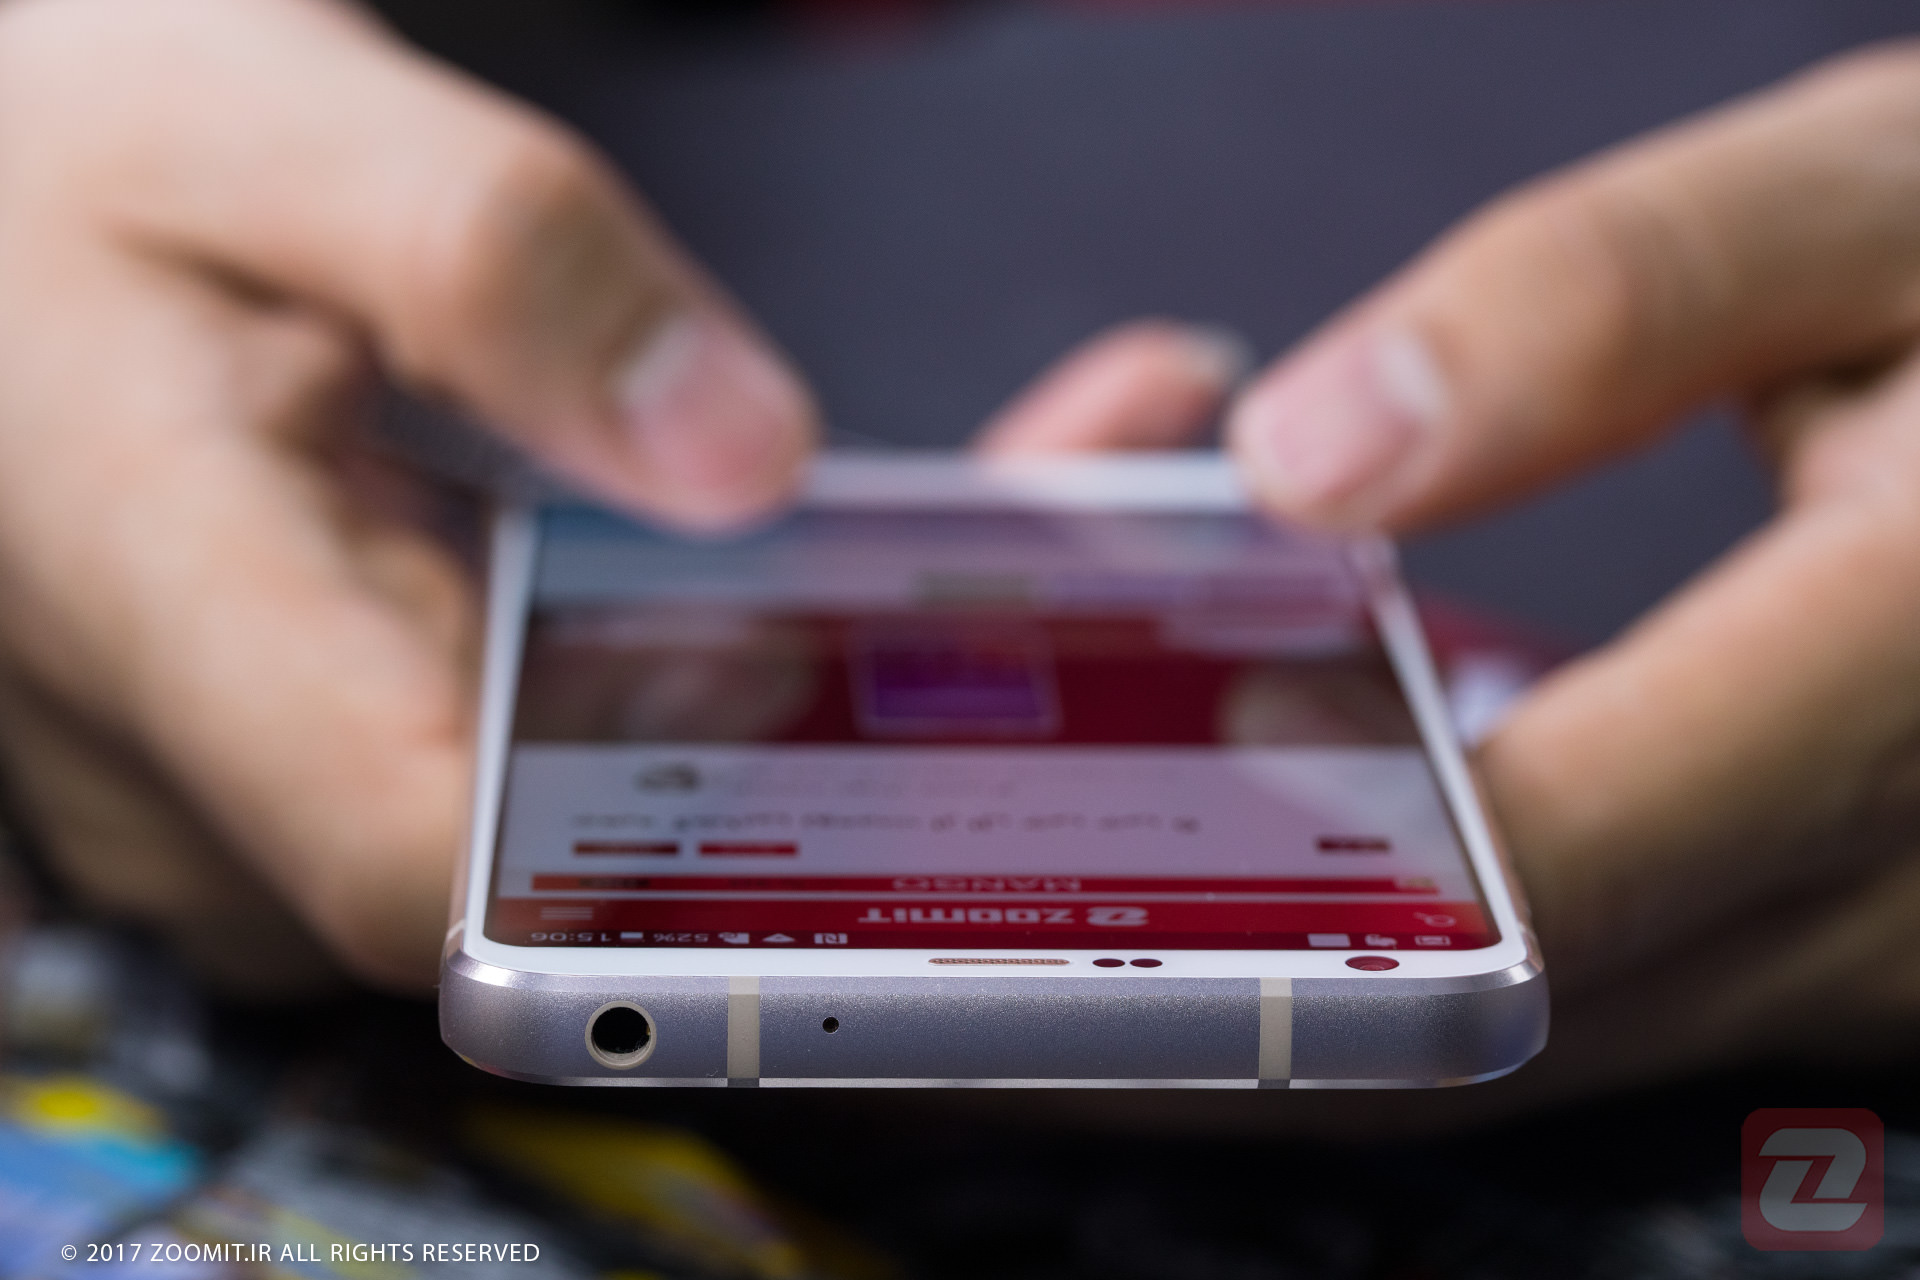 سهم ال جی از بازار گوشی هوشمند در آمریکا به ۲۰ درصد رسید